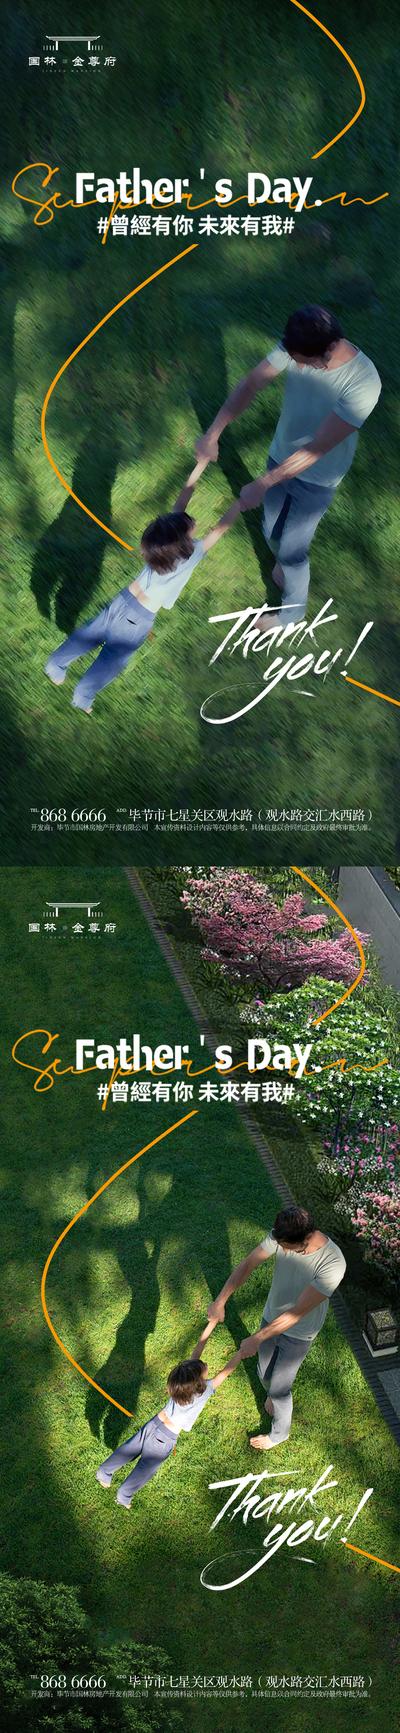 【南门网】广告 海报 地产 父亲节 节气 节日 中式 中国风 父亲 星辰 大海 父爱 山 园林 环境